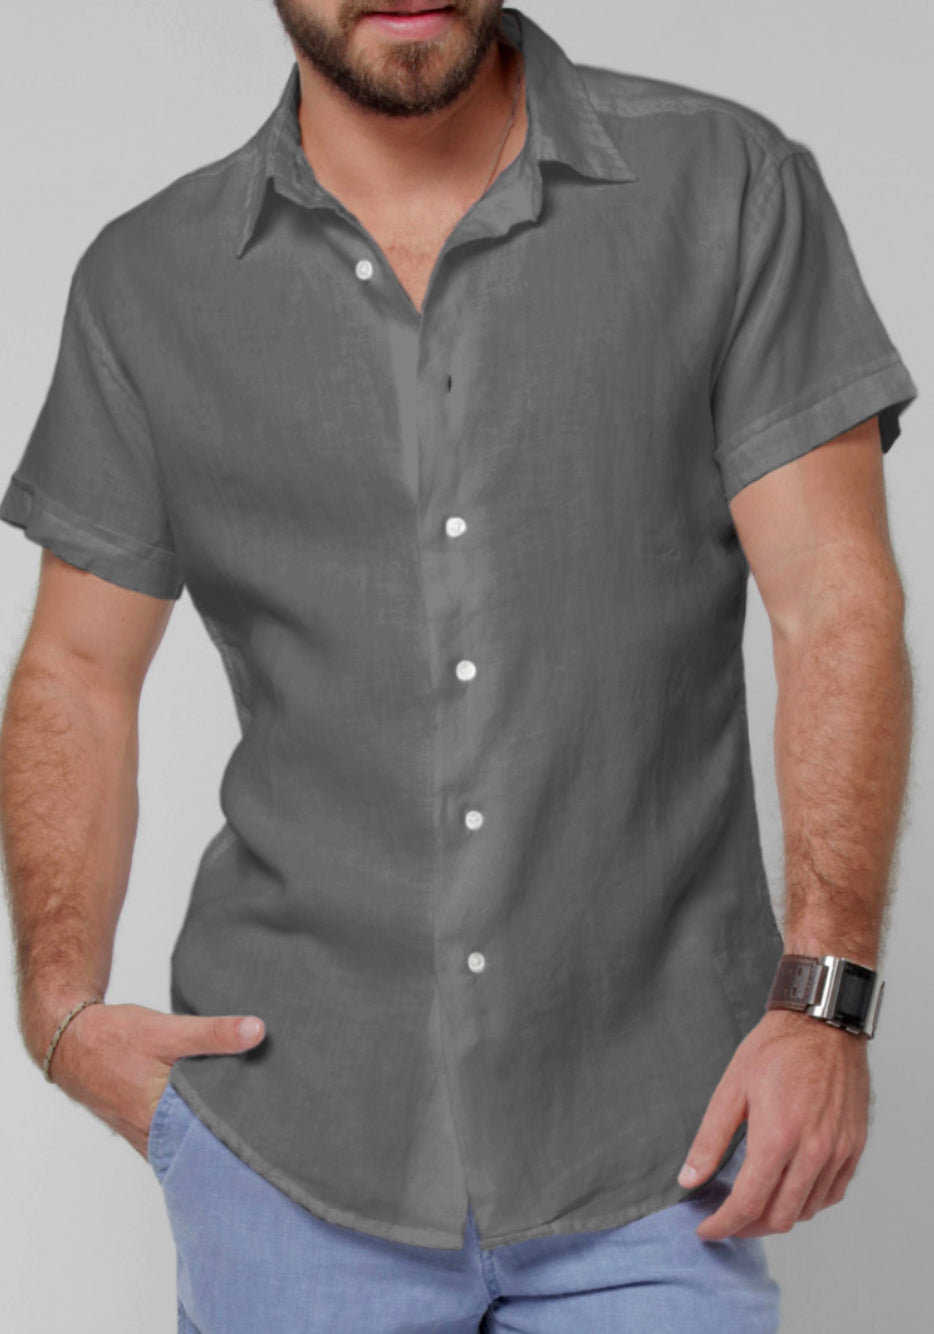 Men's Italian Style Regular Fit Short Sleeve Button Down Linen Shirt ...